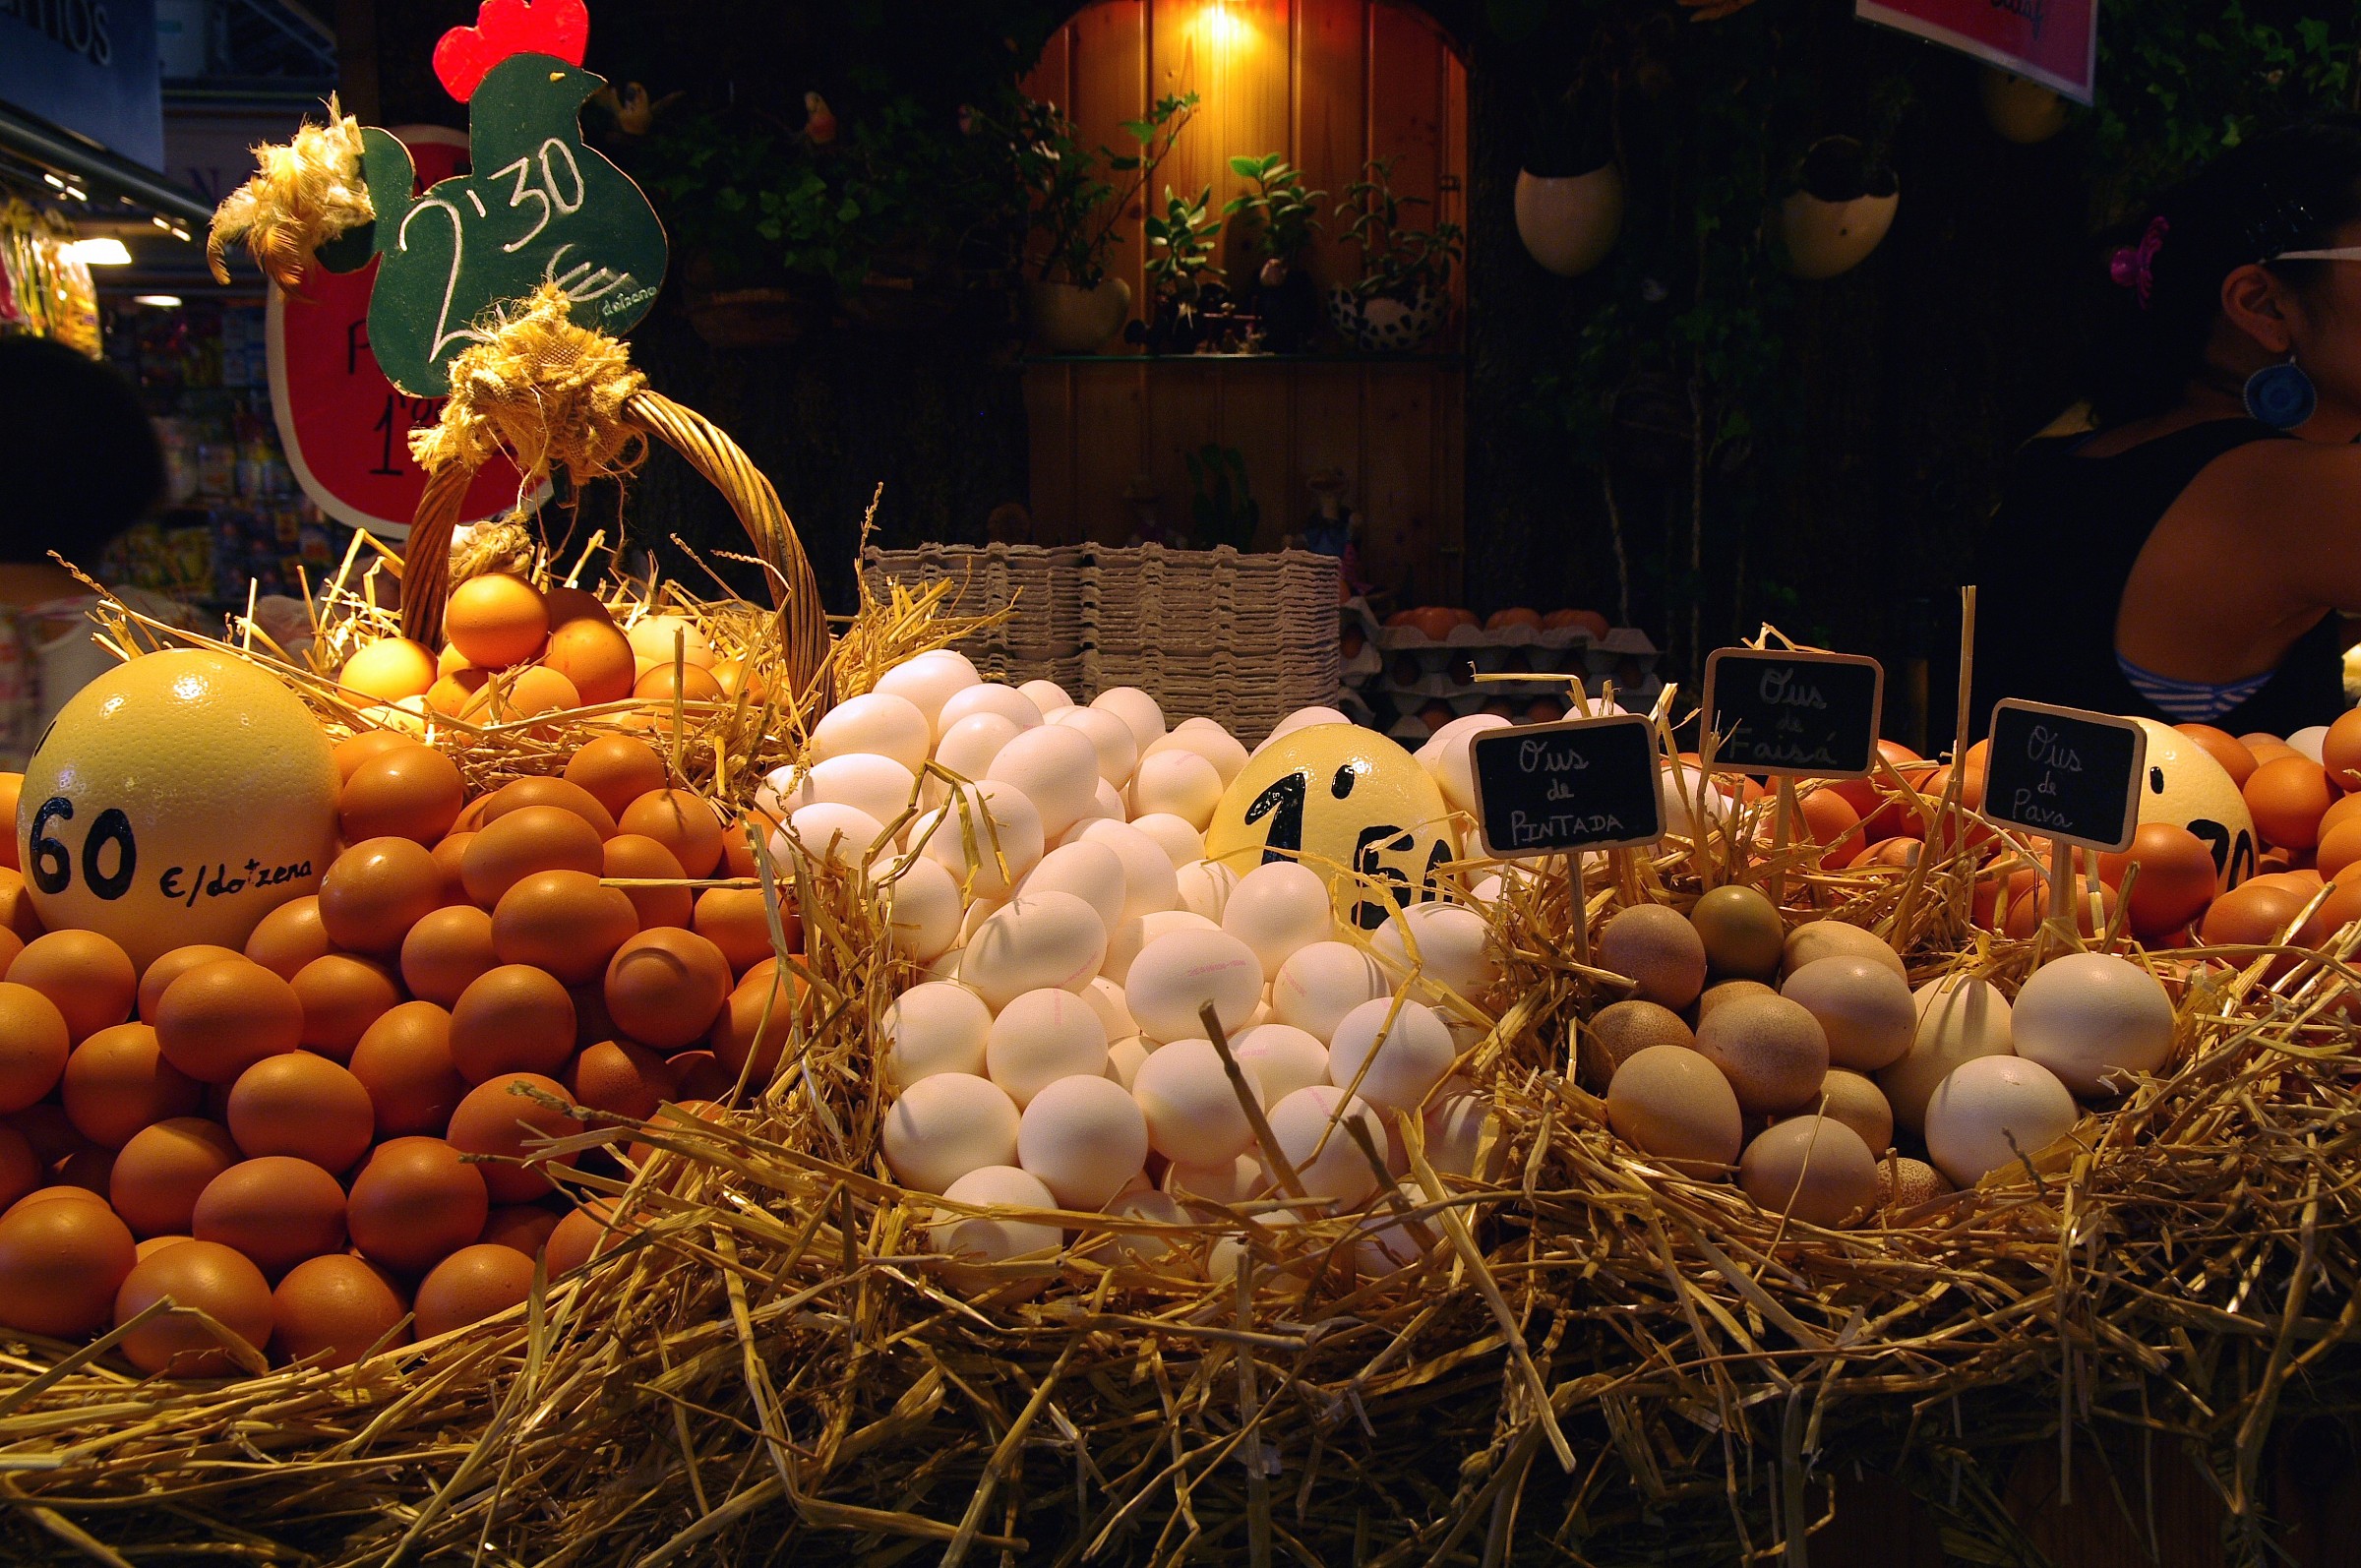 Barcelona egg market...